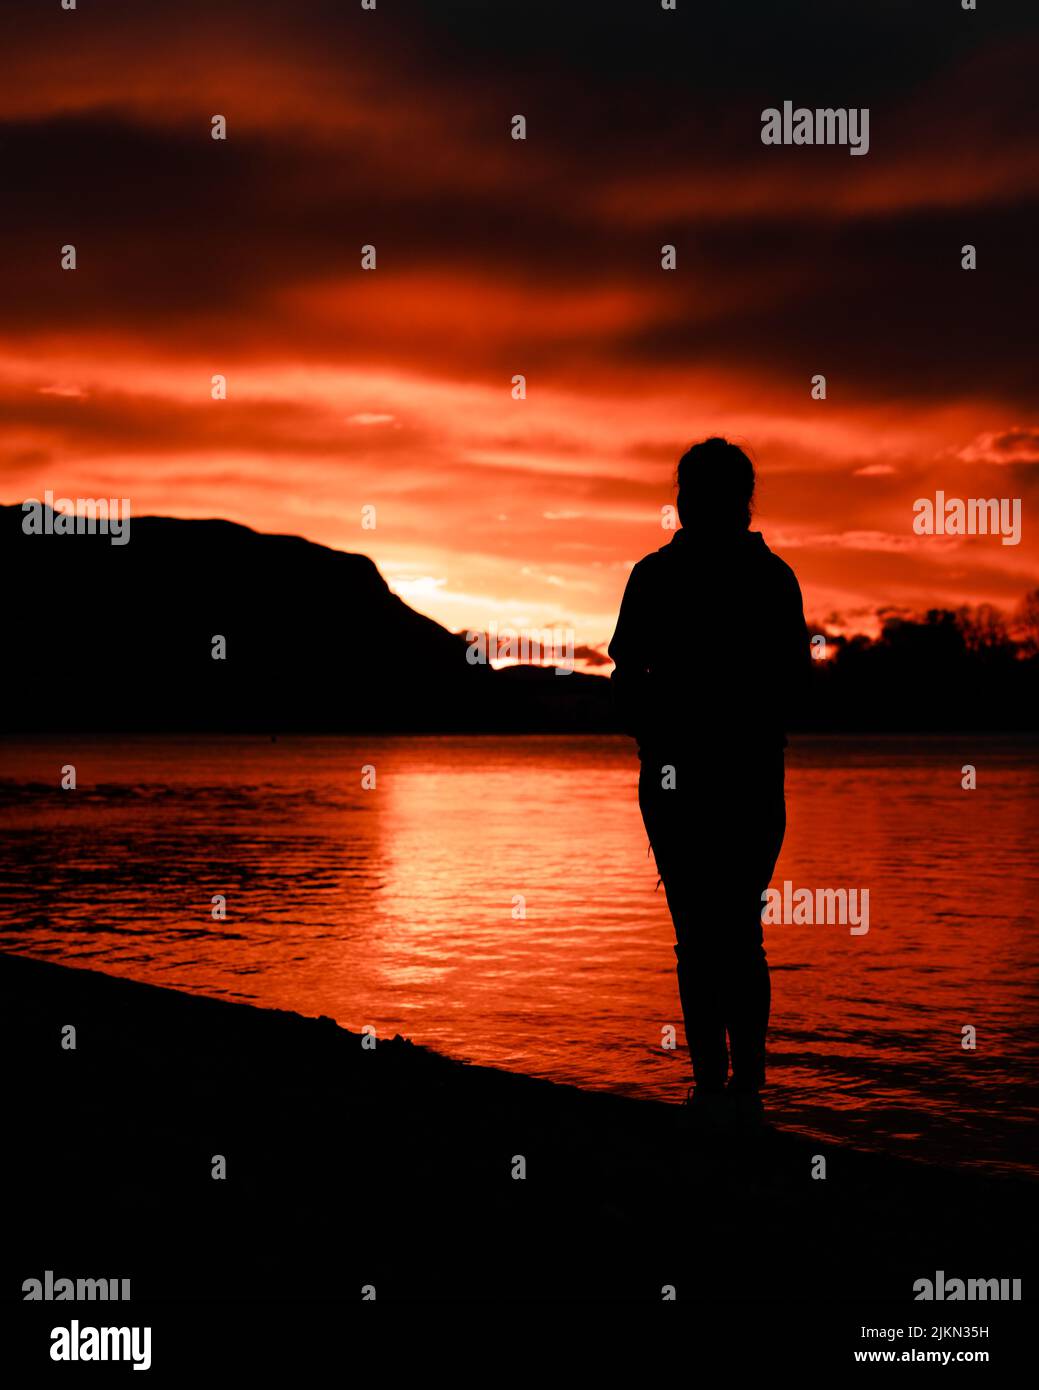 Una Silueta De Una Persona Mirando La Puesta De Sol Junto Al Lago Fotografía De Stock Alamy 